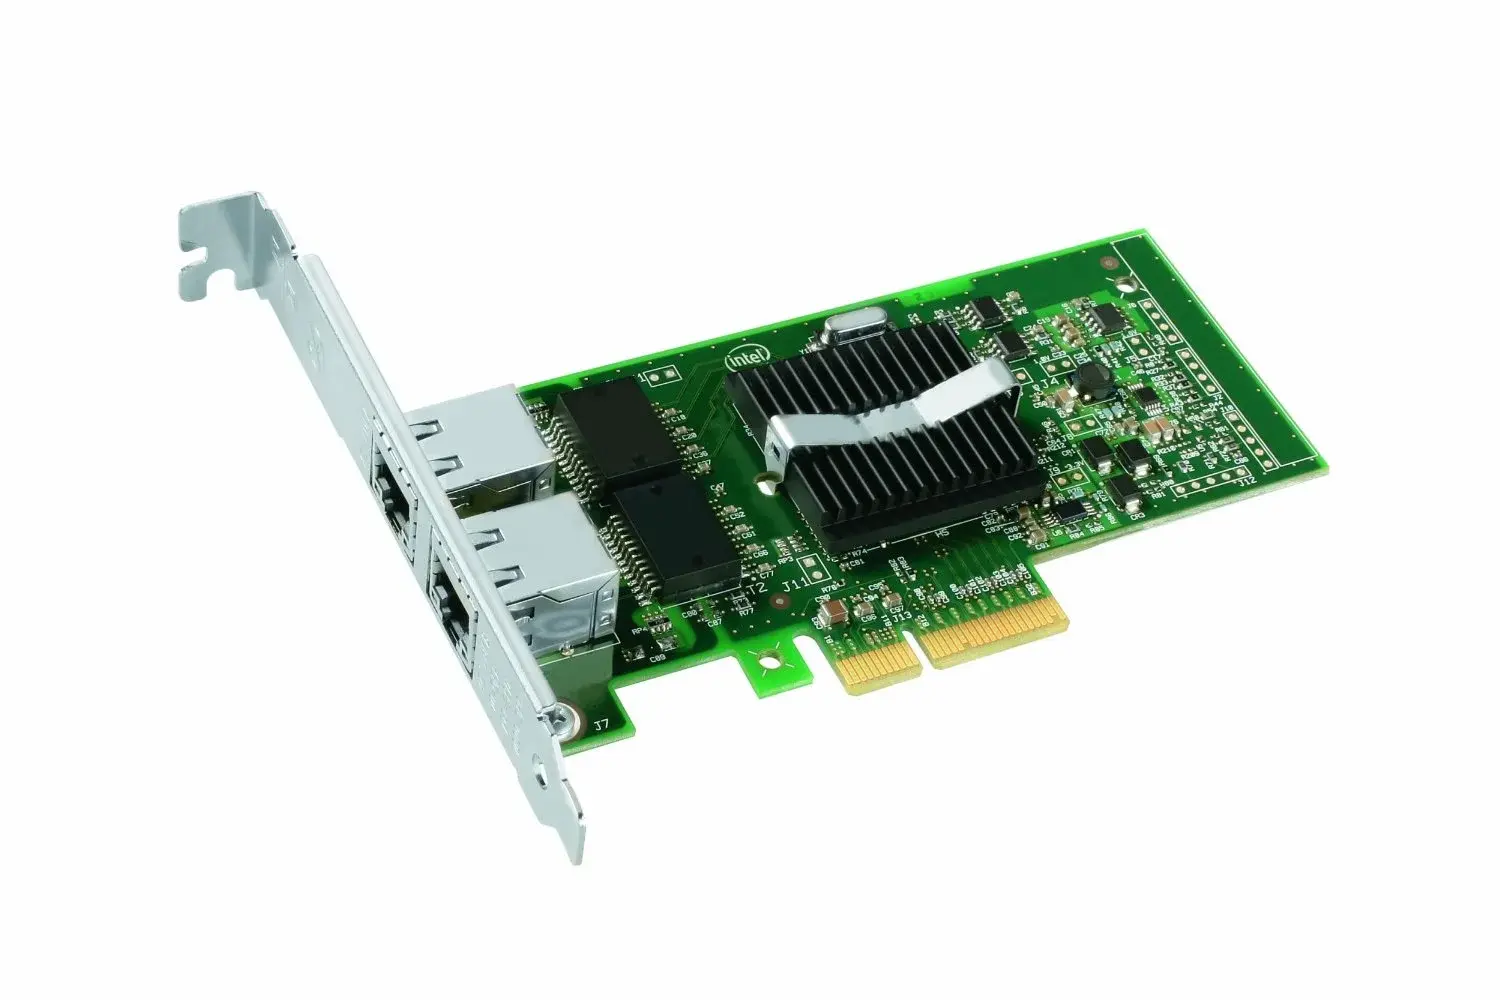 C30848 Intel 82546EB/82546GB PRO/1000MF SX Fiber Dual Port PCI-x Server Adapter